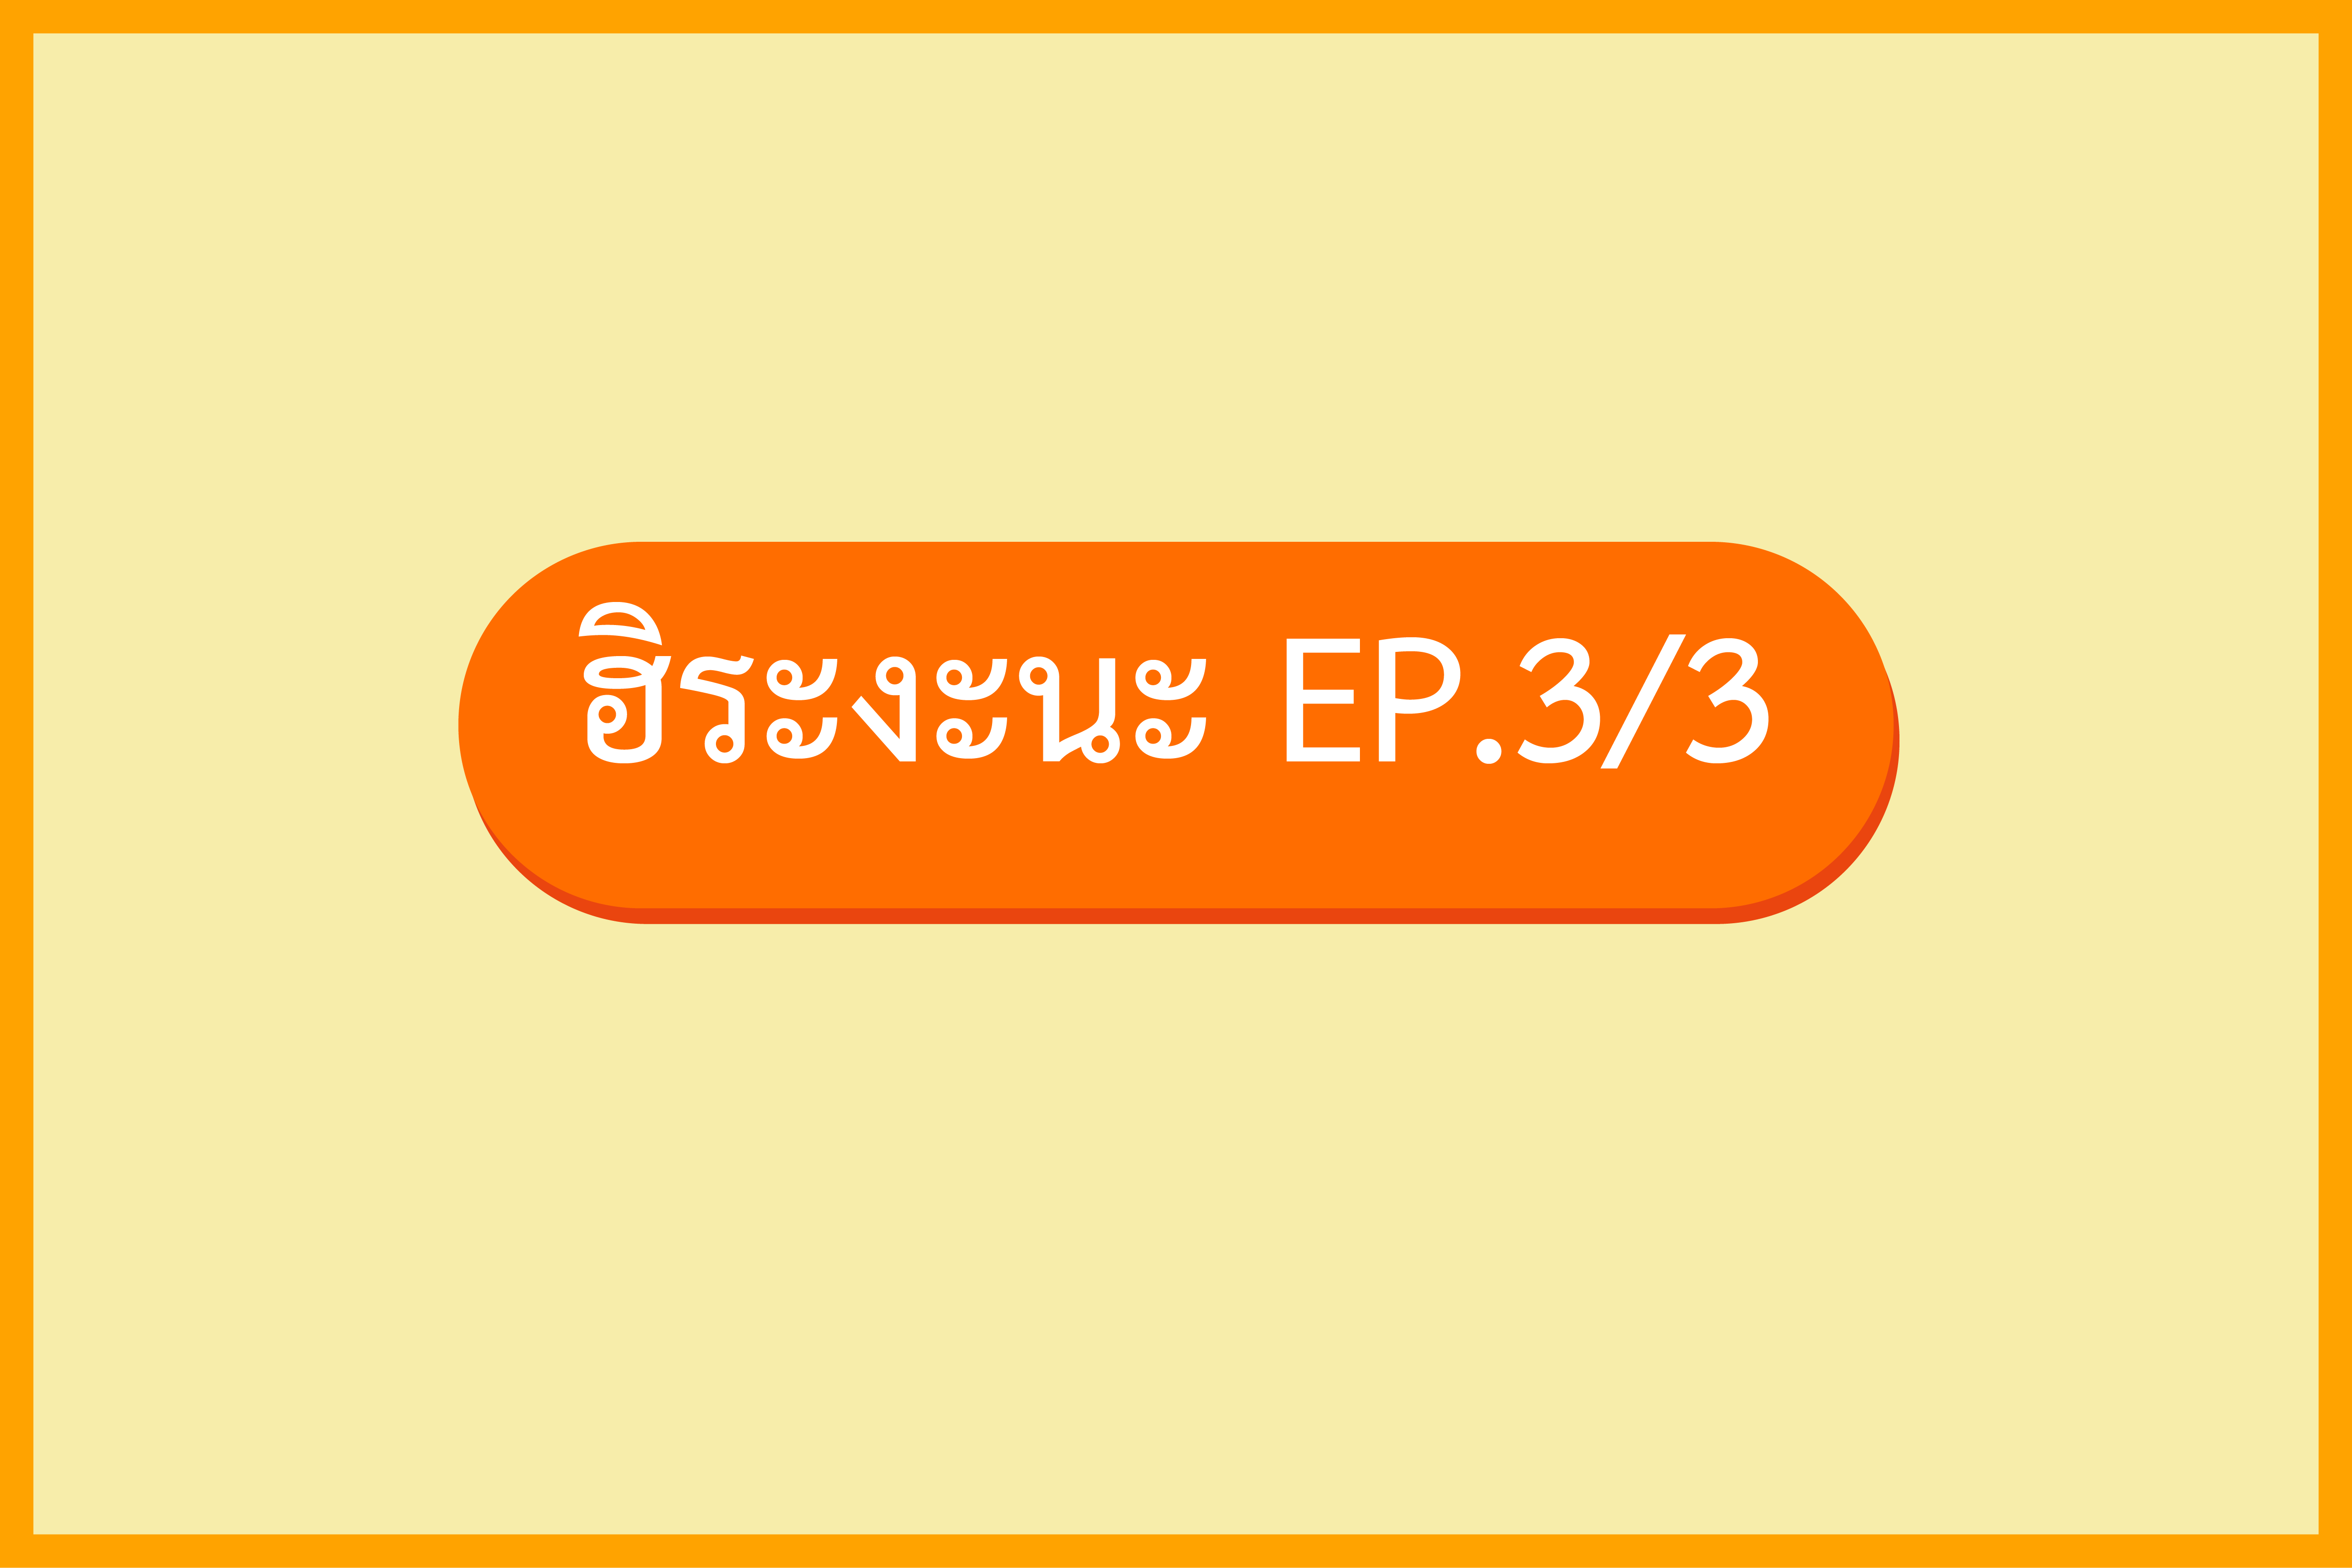 มินนะโนะนิฮงโกะ 1 EP.4 ฮิระงะนะเสียงควบ (3/3)